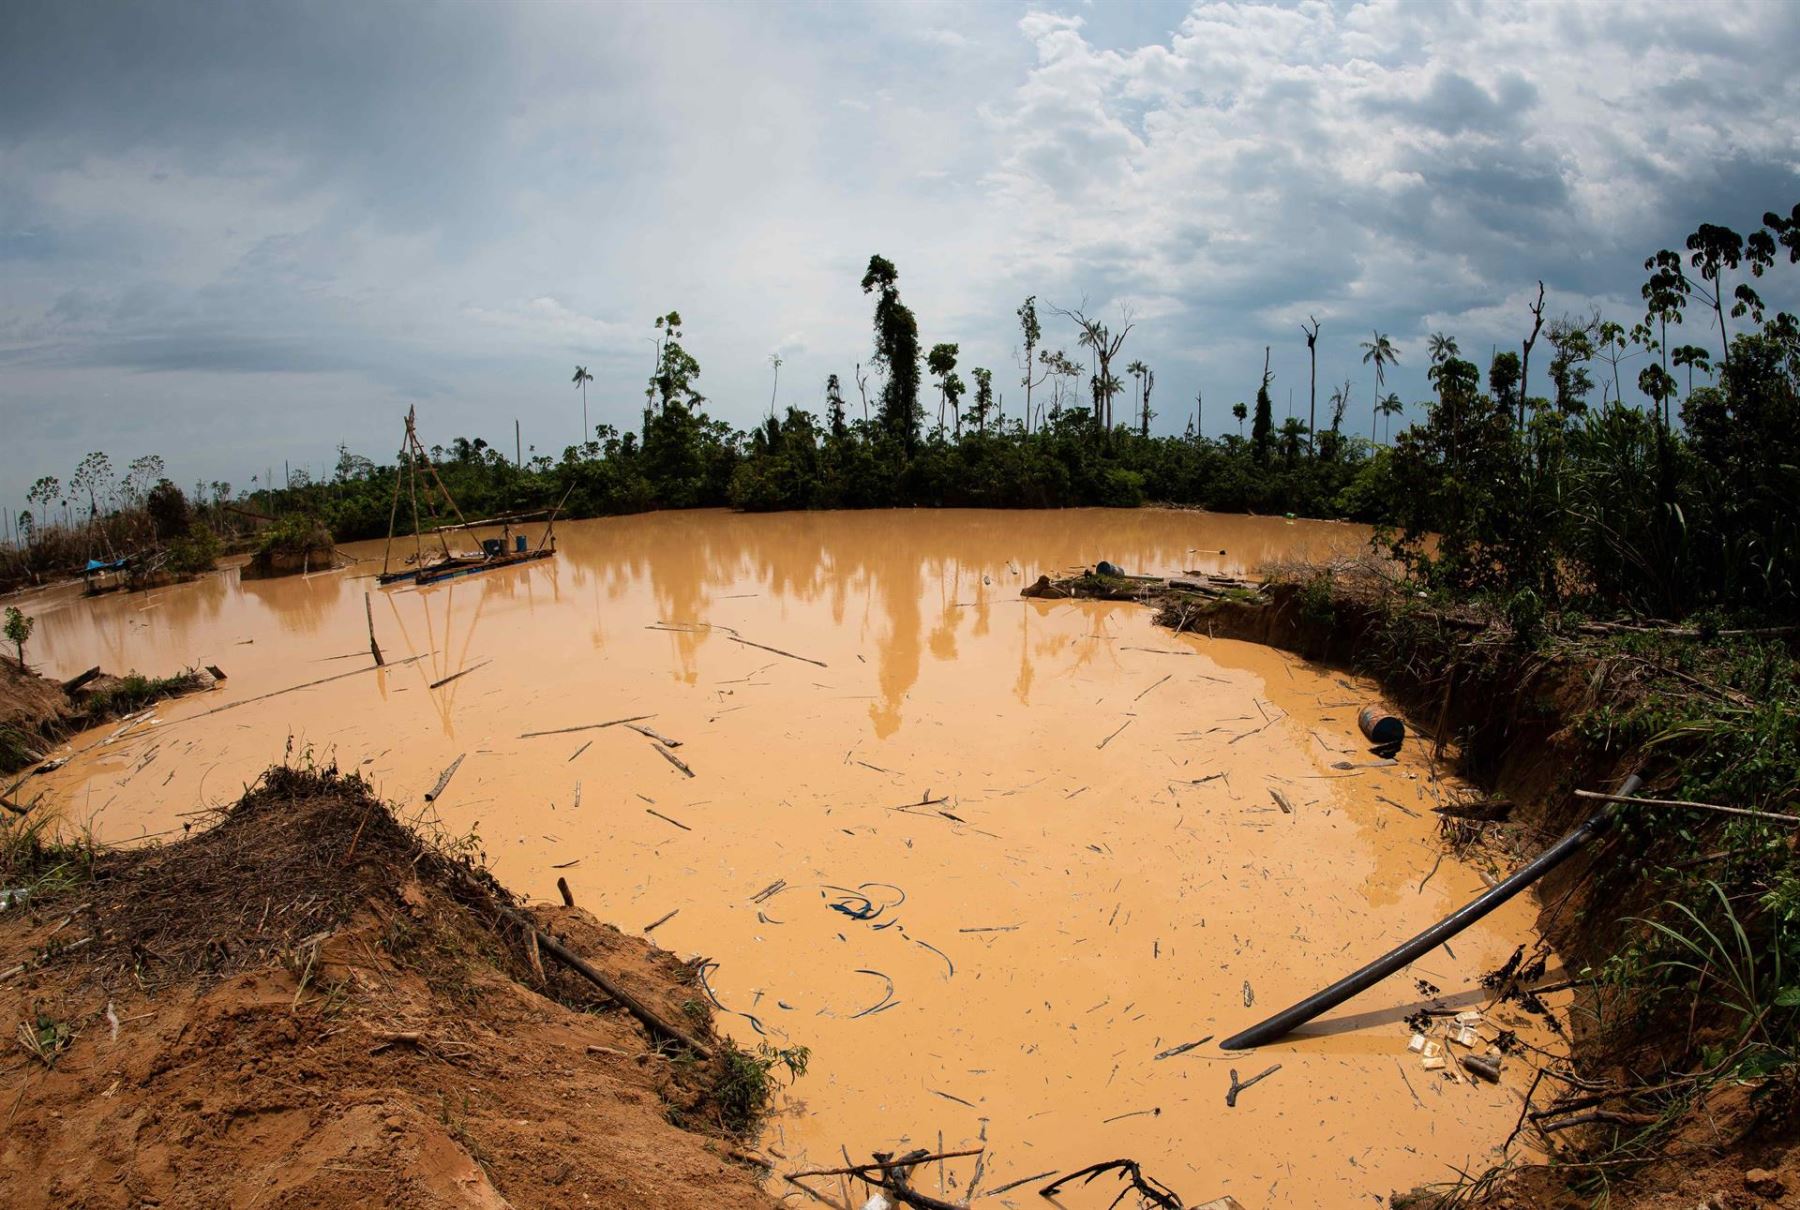 Contaminacion de la amazonia peruana por mineria ilegal. La región Madre de Dios es la más afectada por esta actividad ilícita.